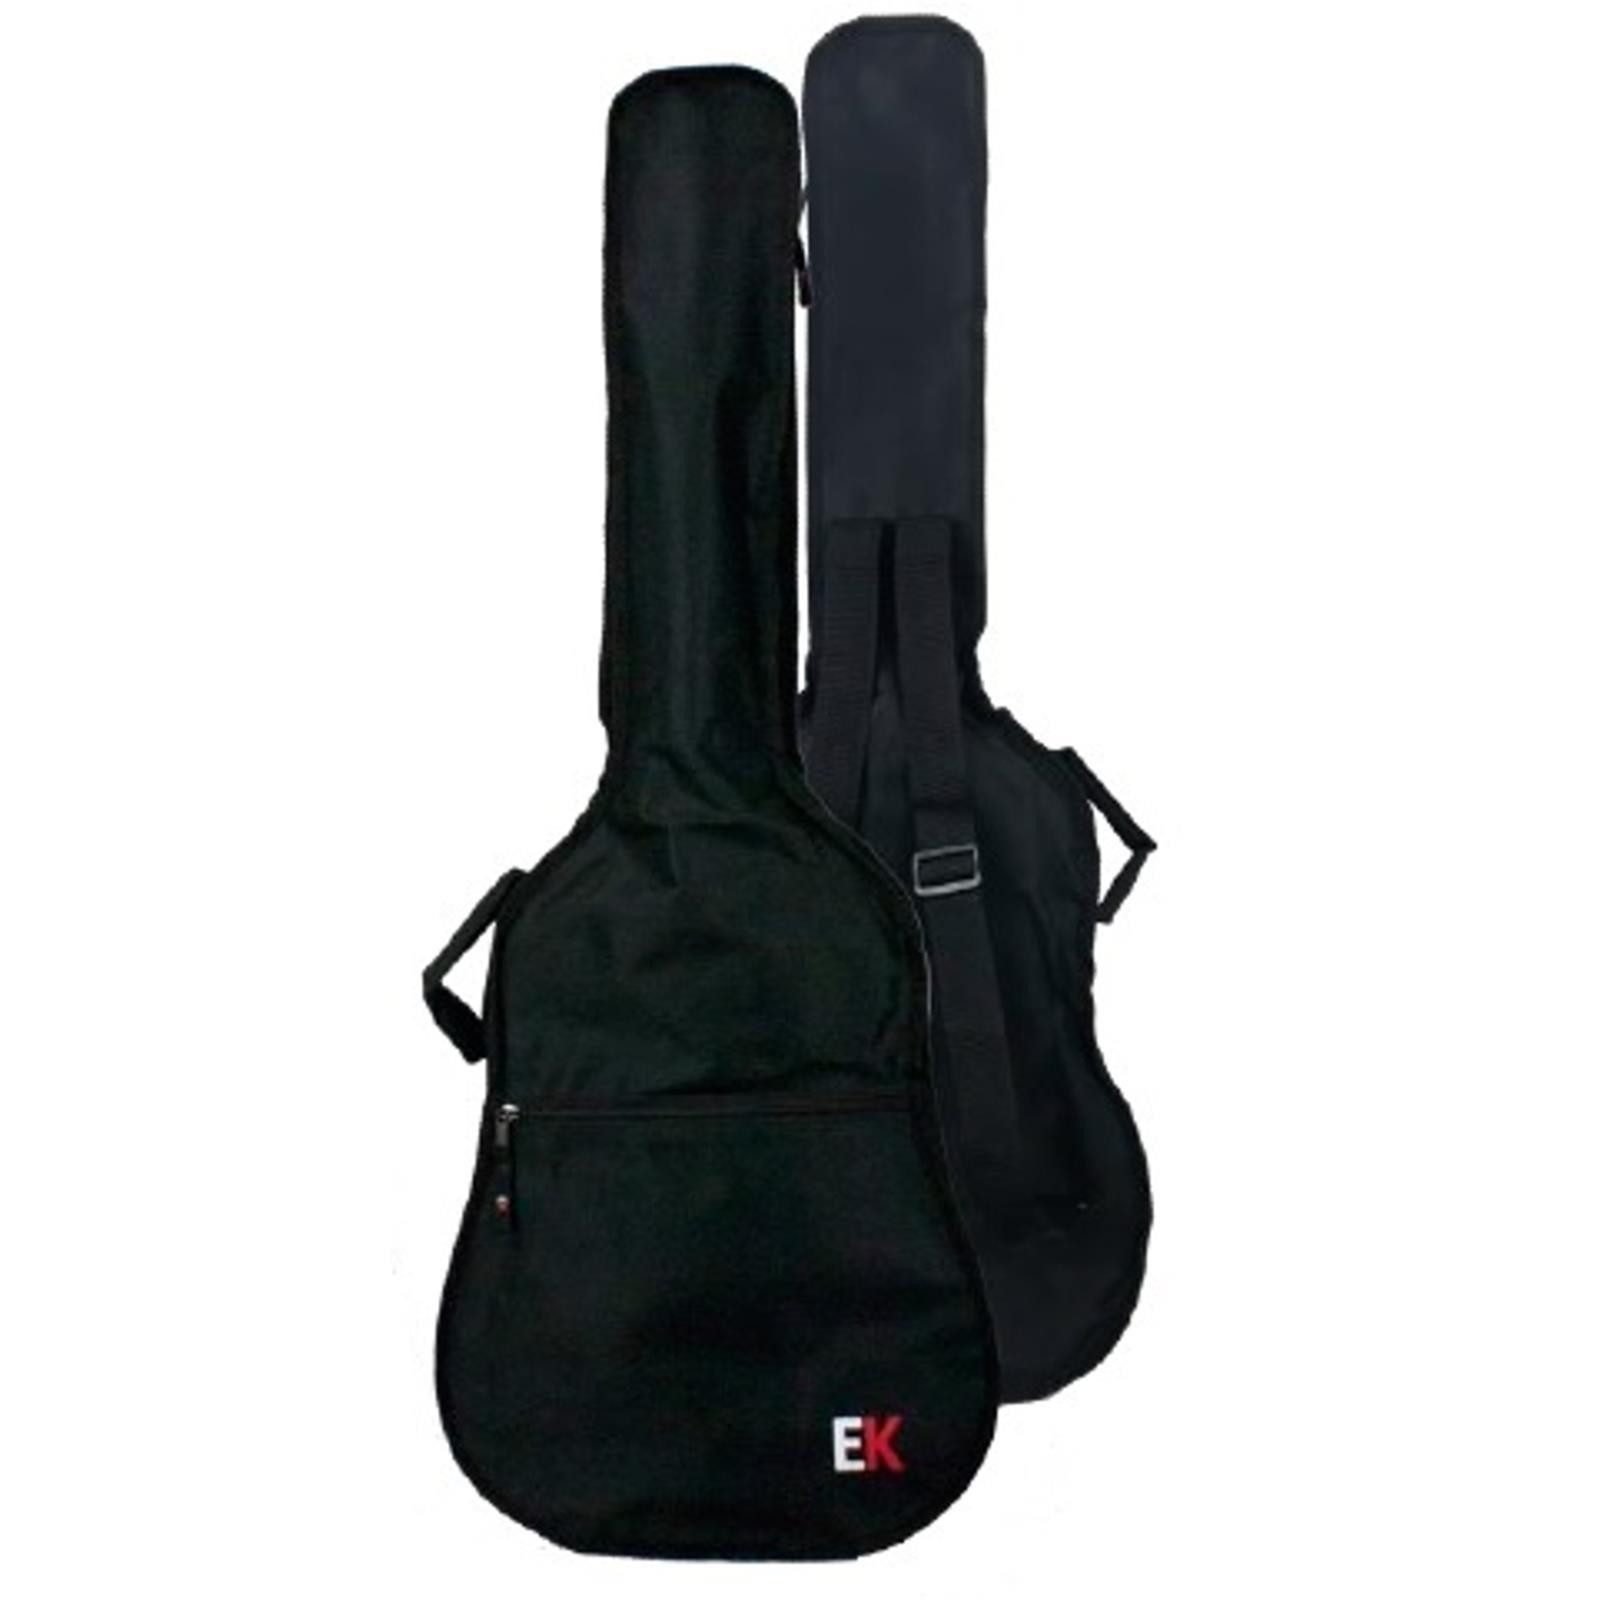 Enrique Keller Gitarrentasche für Konzertgitarre, mit EK-Logo